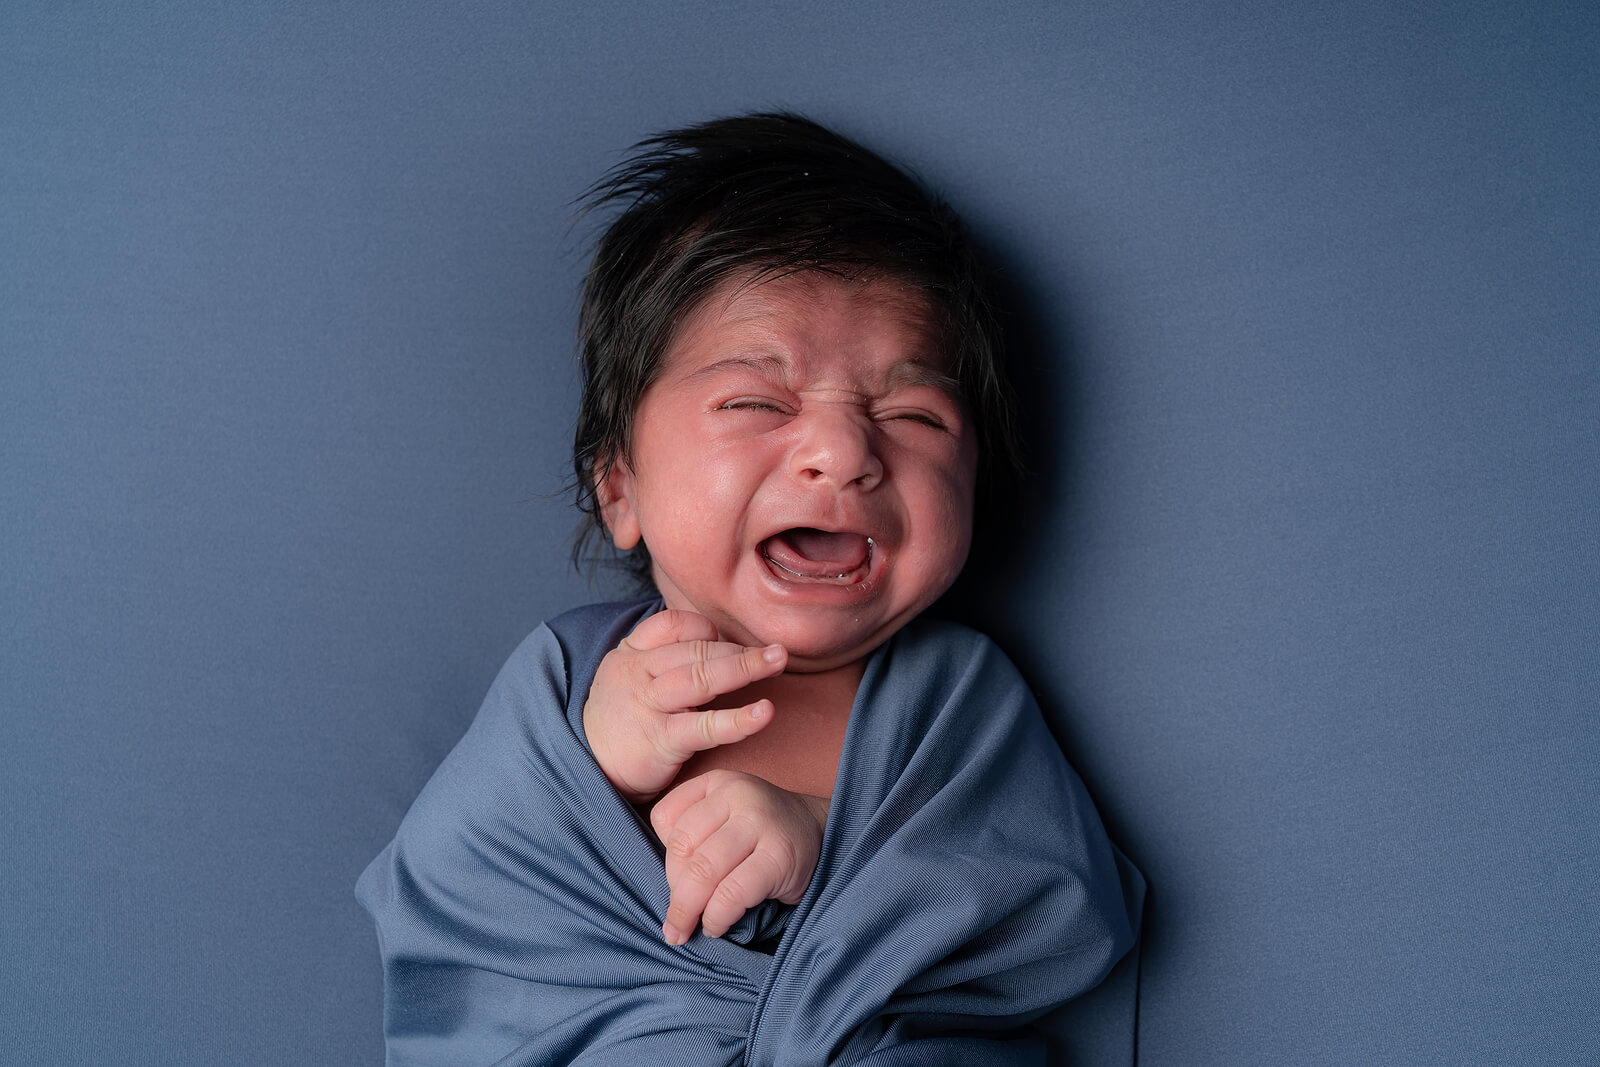 Síndrome de abstinencia neonatal: ¿en qué consiste?